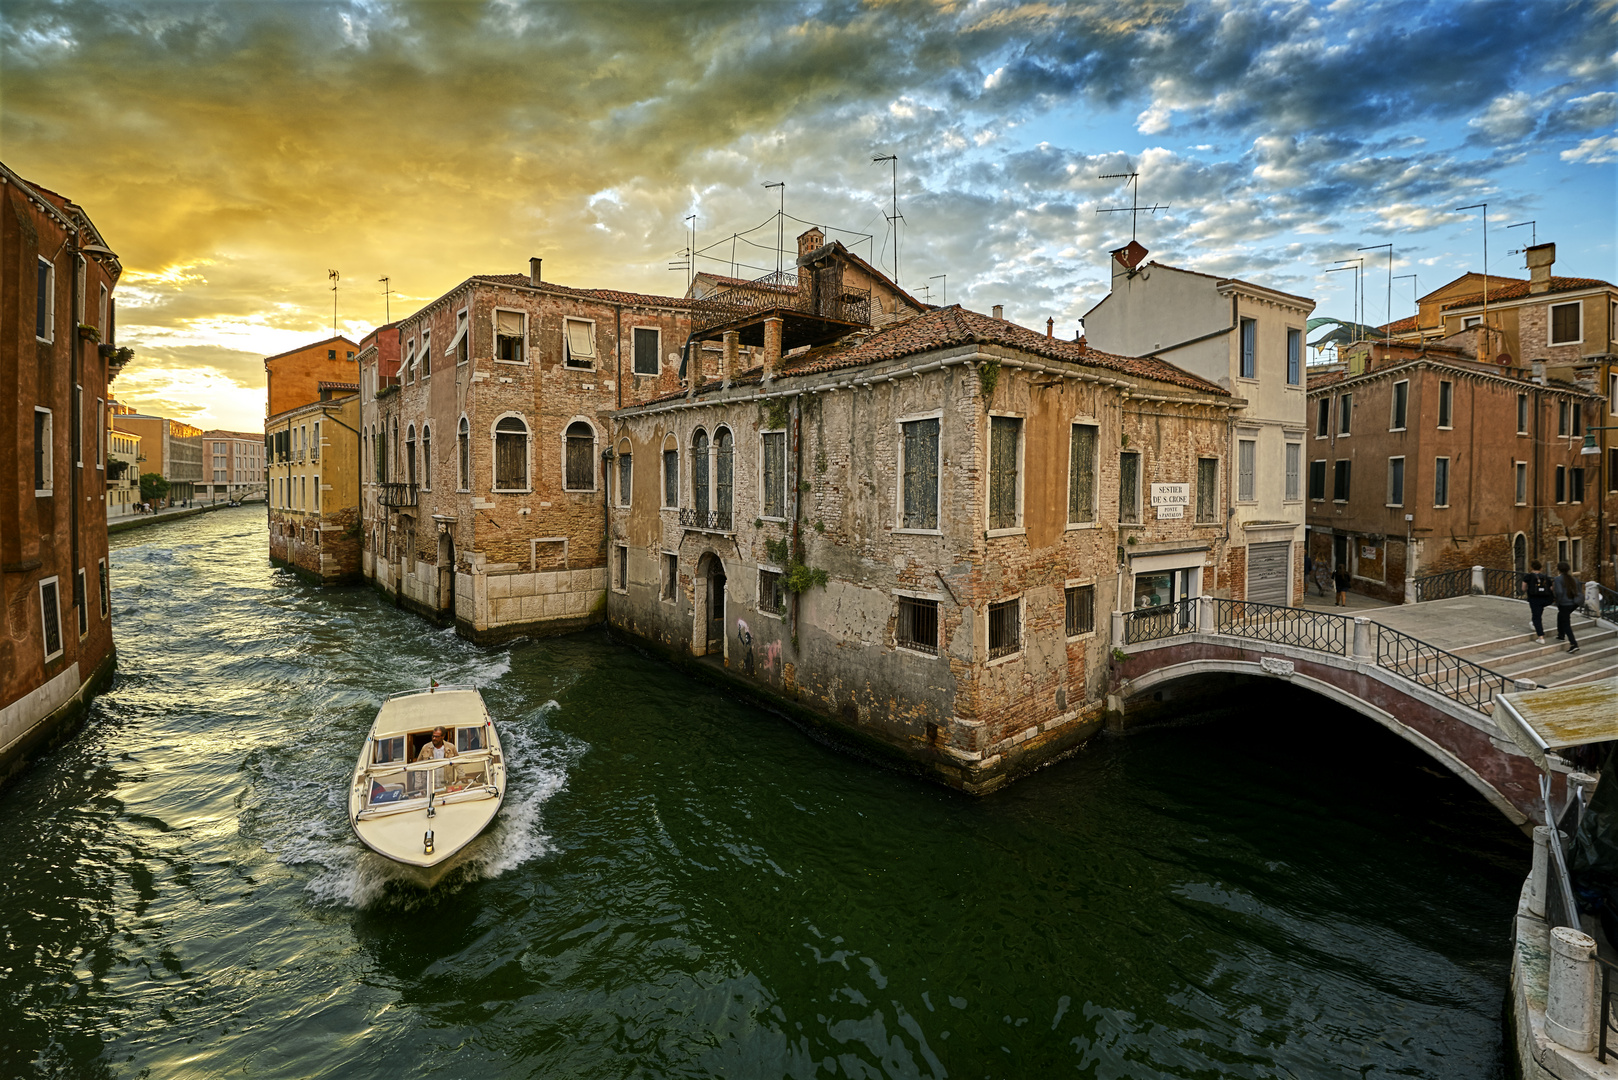 Venezianische Träume: Eine Reise durch die Kanäle und Gassen von Venedig